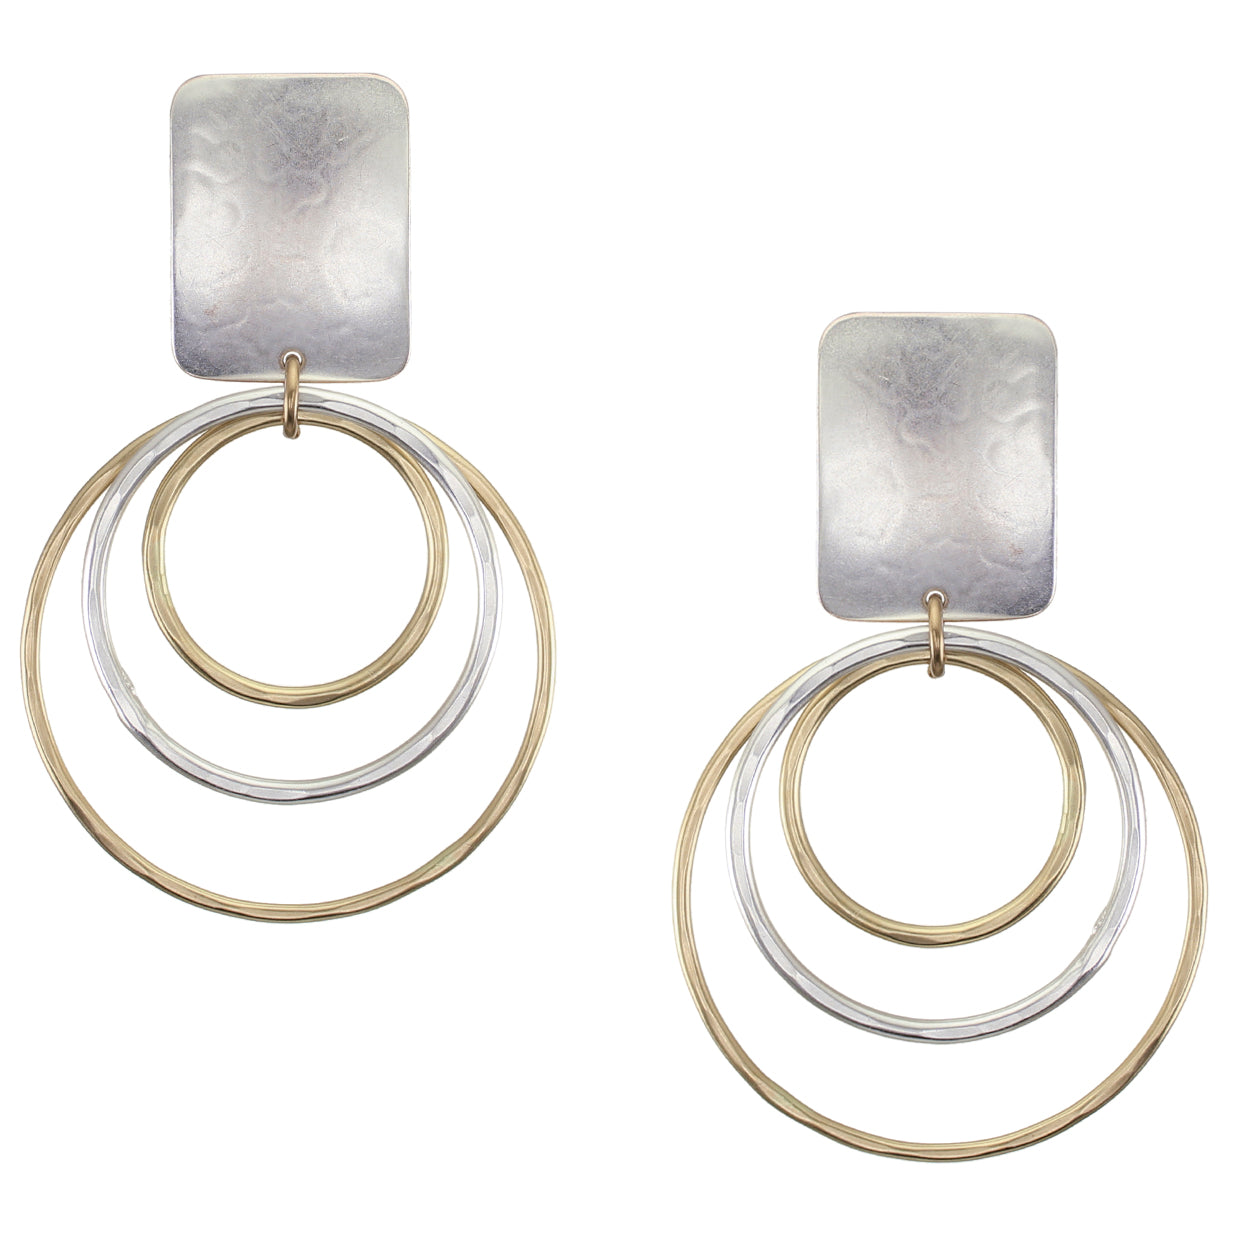 Pair of Stud Earrings with 1 Clip Stainless Steel Hypoallergenic Earrings  Philippines  Silverworks  SilverWorks